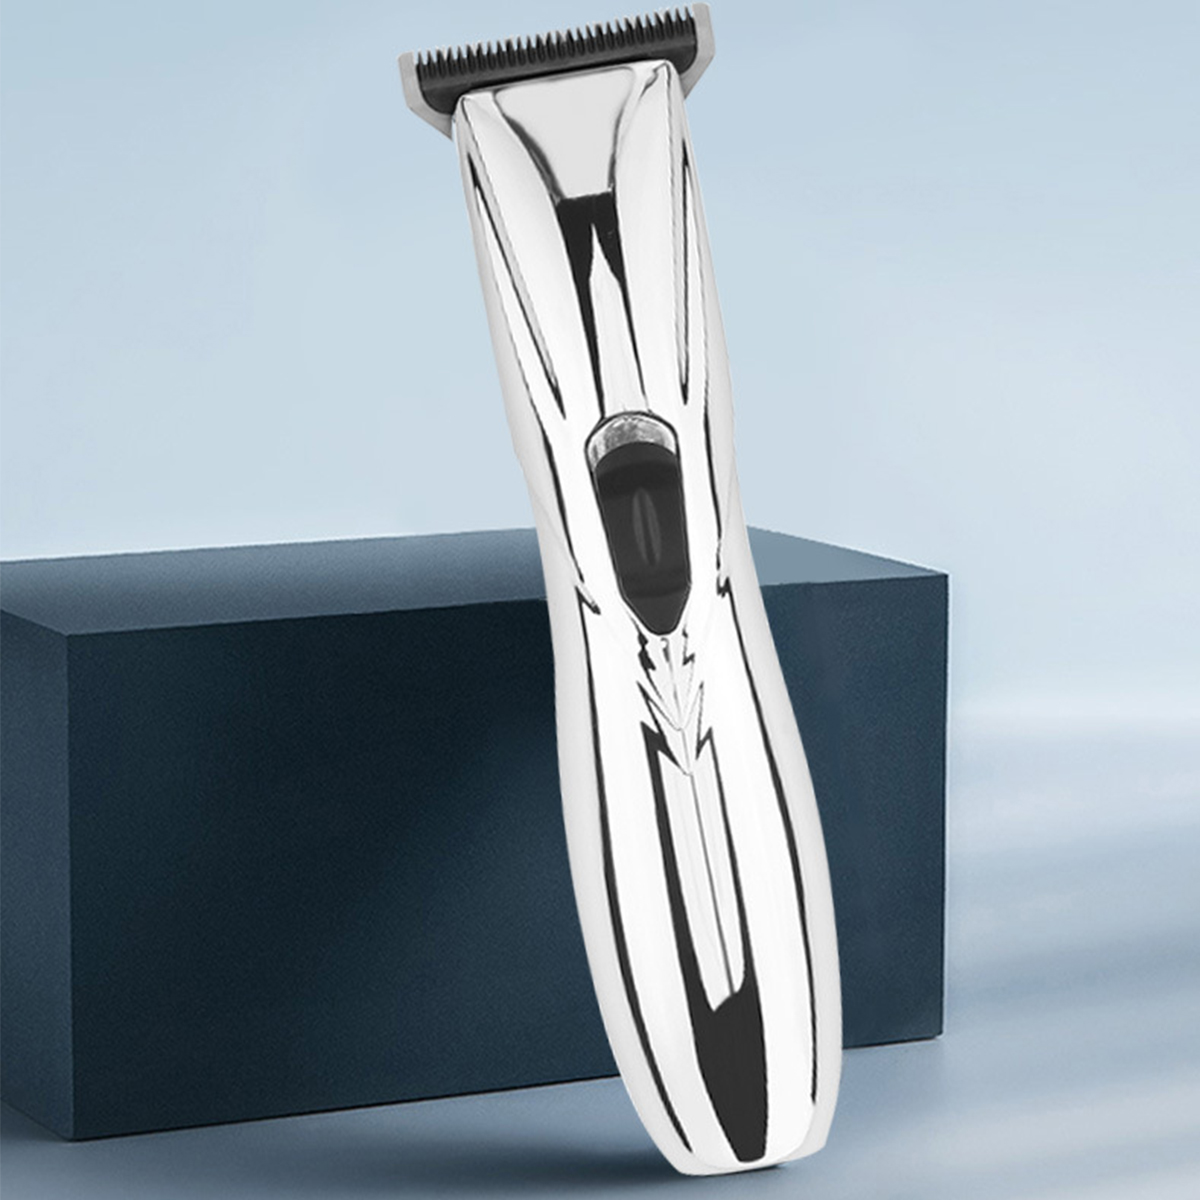 Friseur|Schmierkopf Elektrischer Haarschneidemaschine Silber Elektrischer Drücker|Geräuscharm|Langlebigkeit BRIGHTAKE